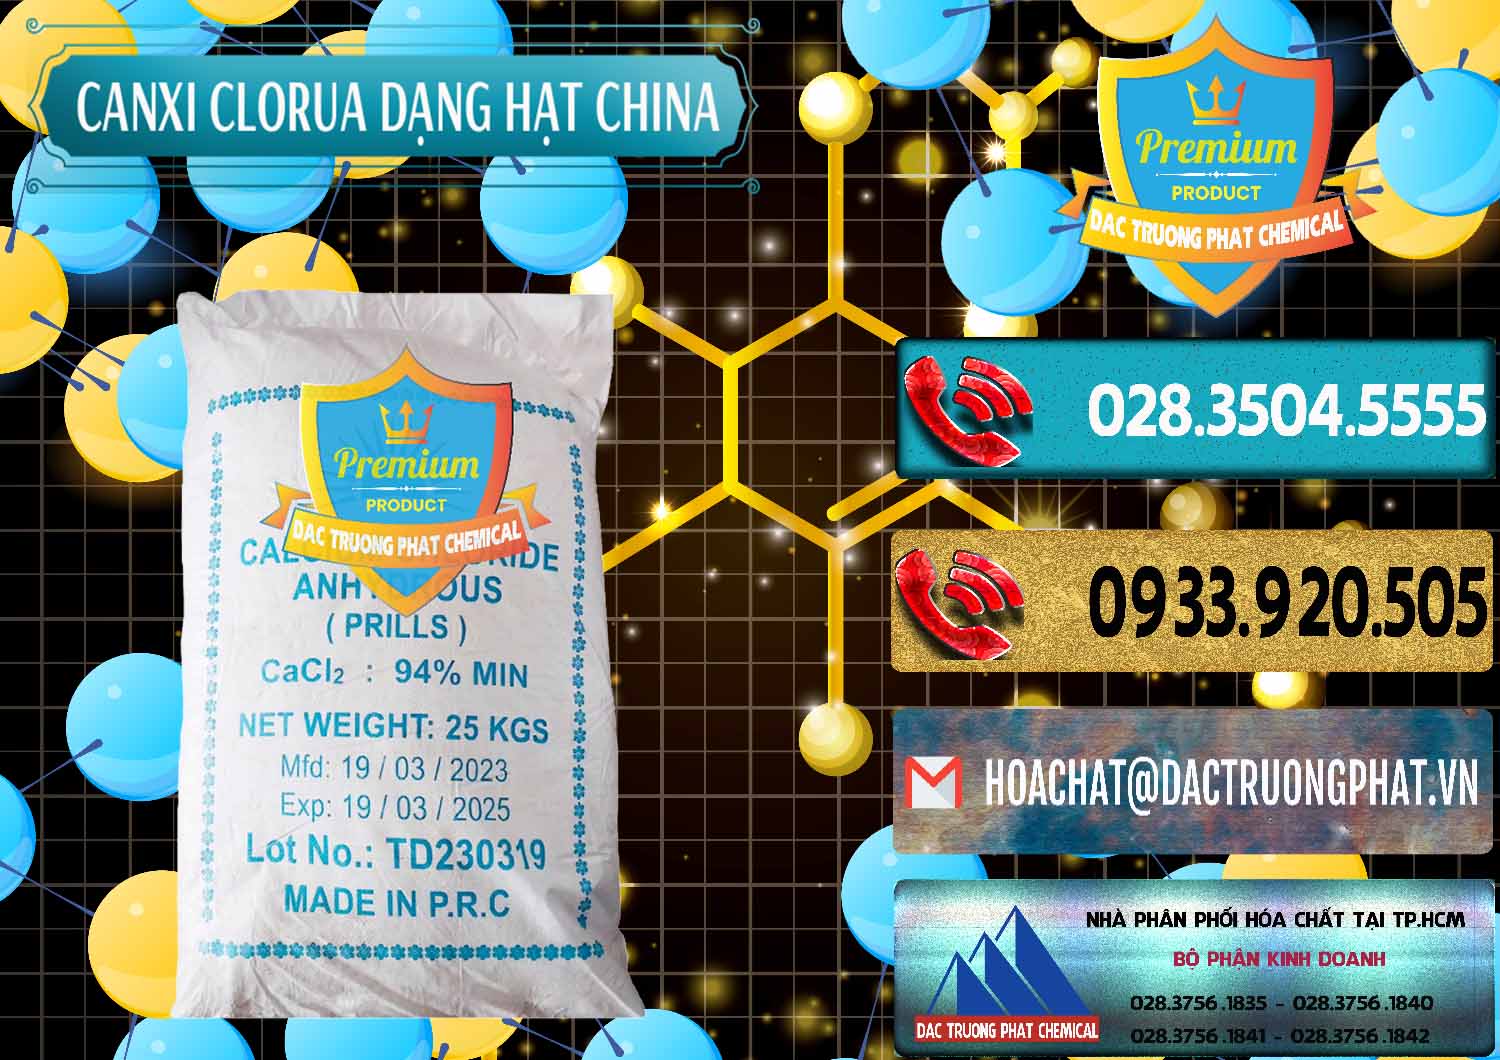 Đơn vị chuyên cung ứng & bán CaCl2 – Canxi Clorua 94% Dạng Hạt Trung Quốc China - 0373 - Đơn vị nhập khẩu - cung cấp hóa chất tại TP.HCM - hoachatdetnhuom.com